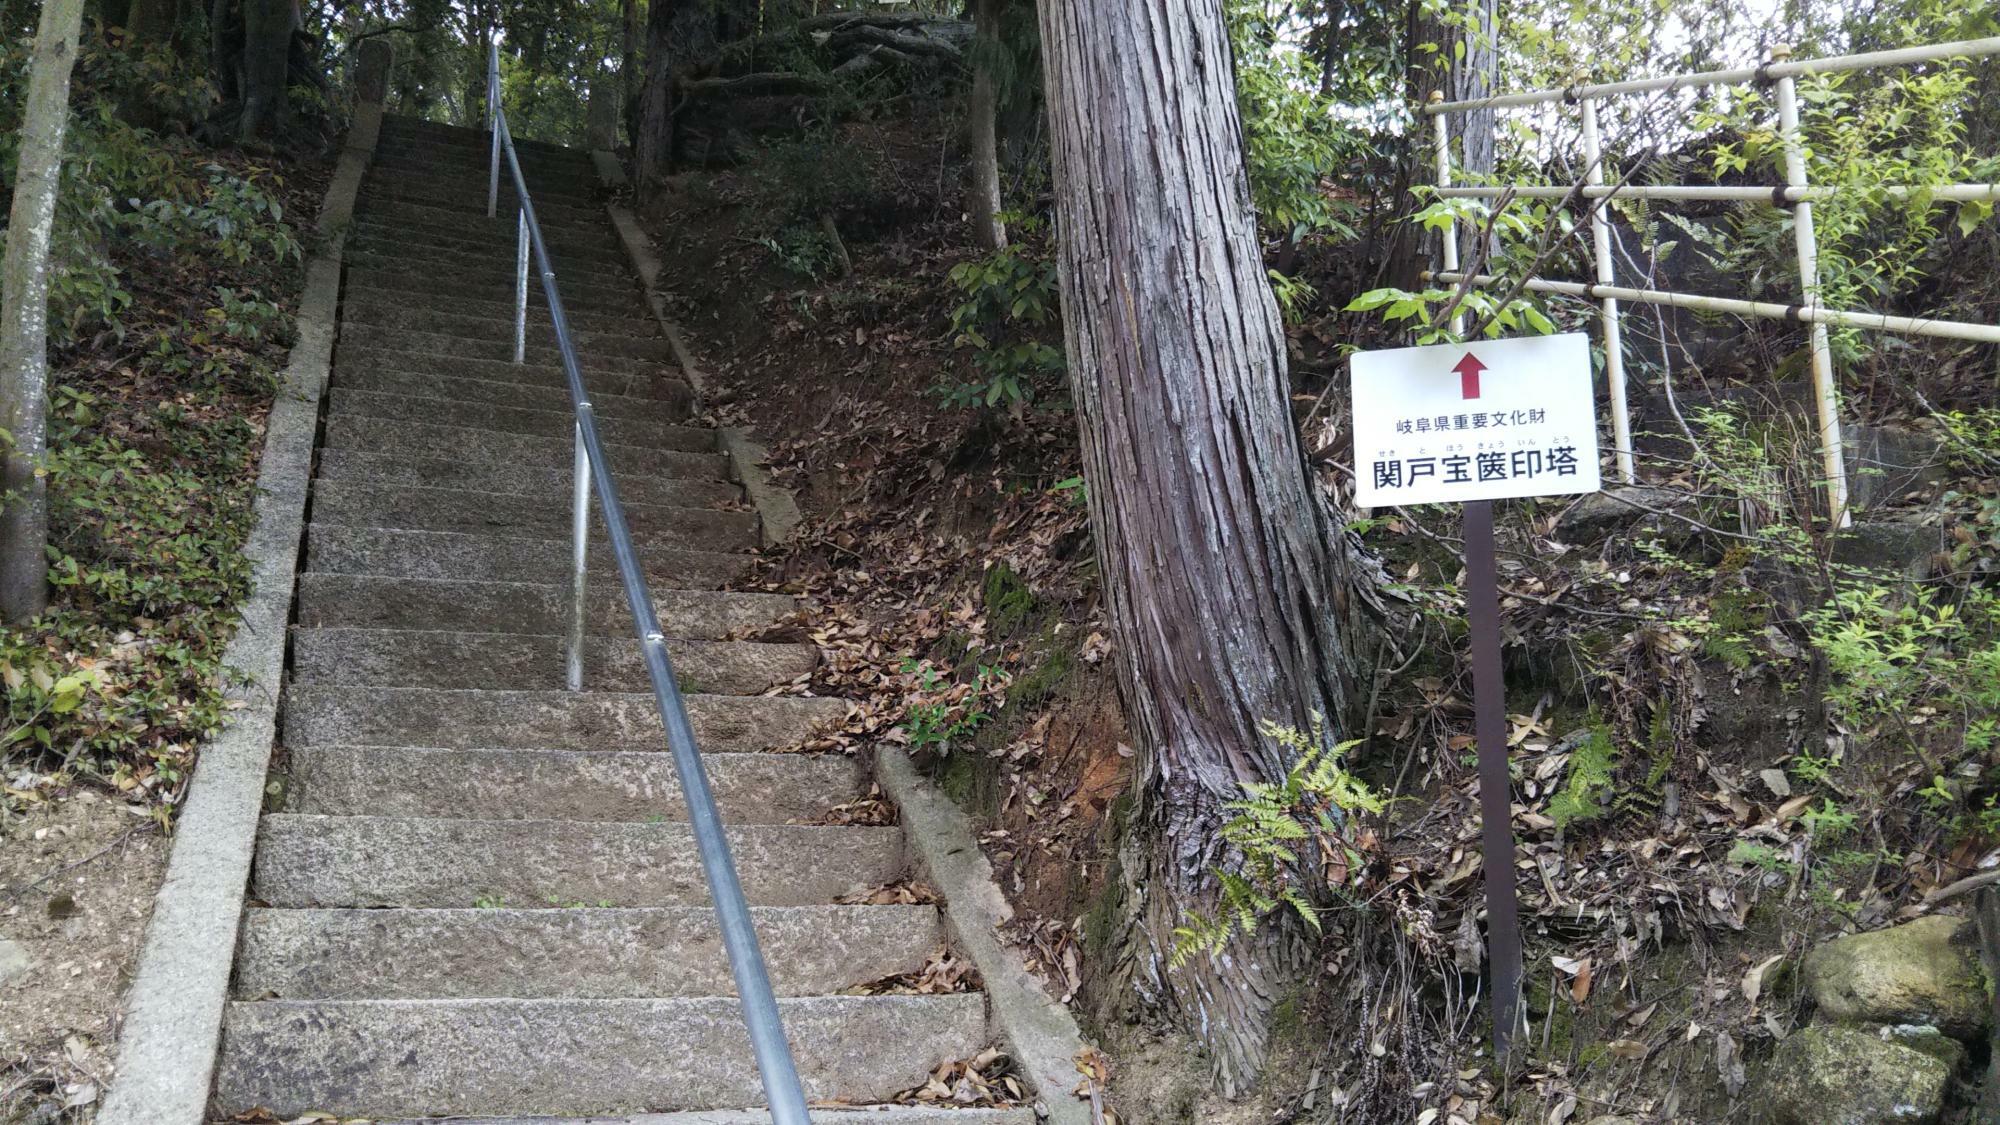 ひっそりとしていますが、岐阜県の重要文化財なんですね。小さくて急な階段です